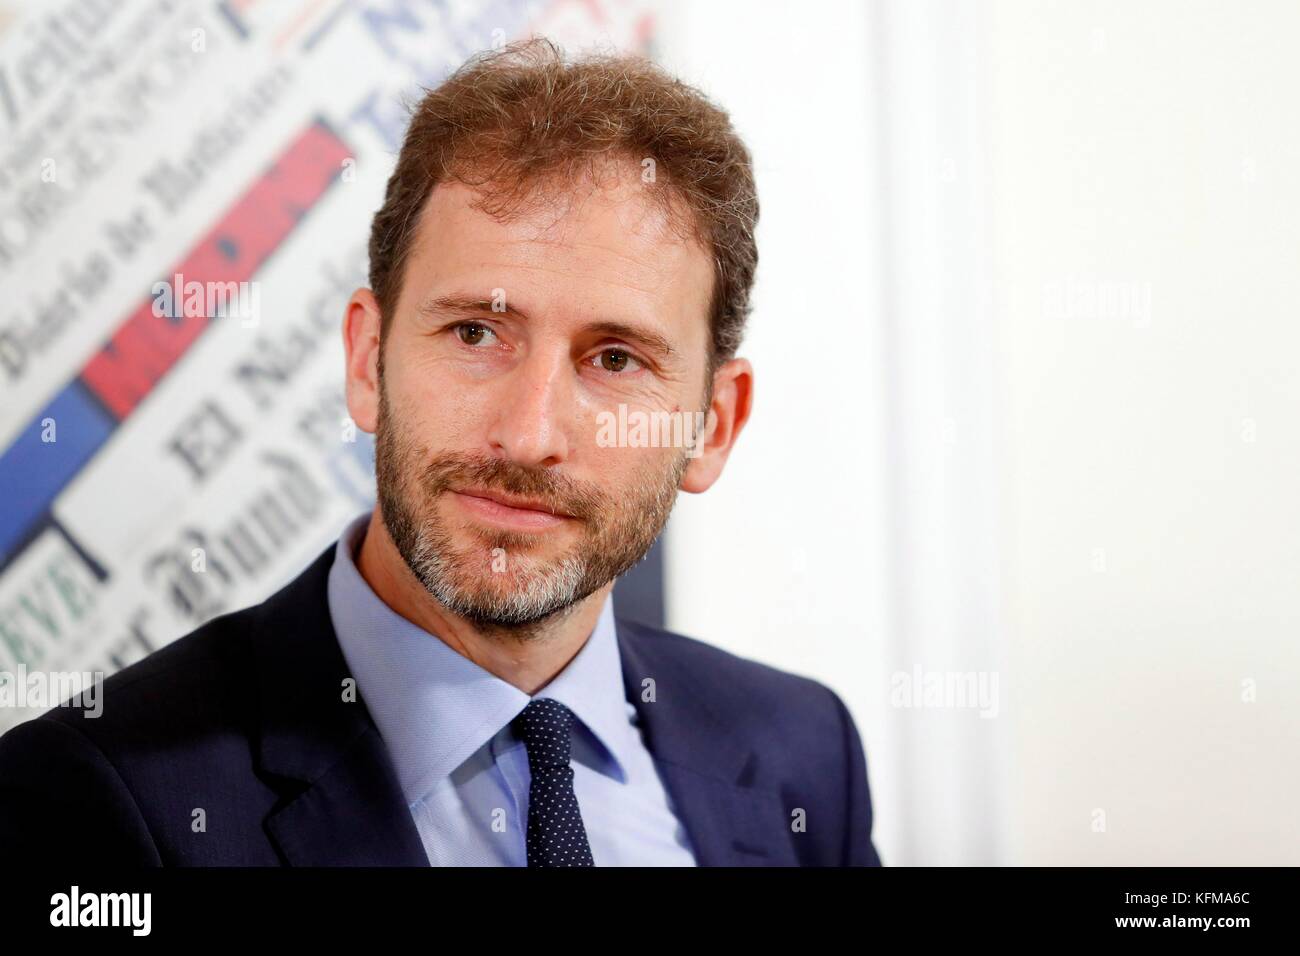 Davide casaleggio, chef du mouvement cinq étoiles (m5s) partie, en conférence de presse, Rome, Italie 02/08/2017 © Crédit Denis zammit remo/sintesi/Alamy stock Banque D'Images